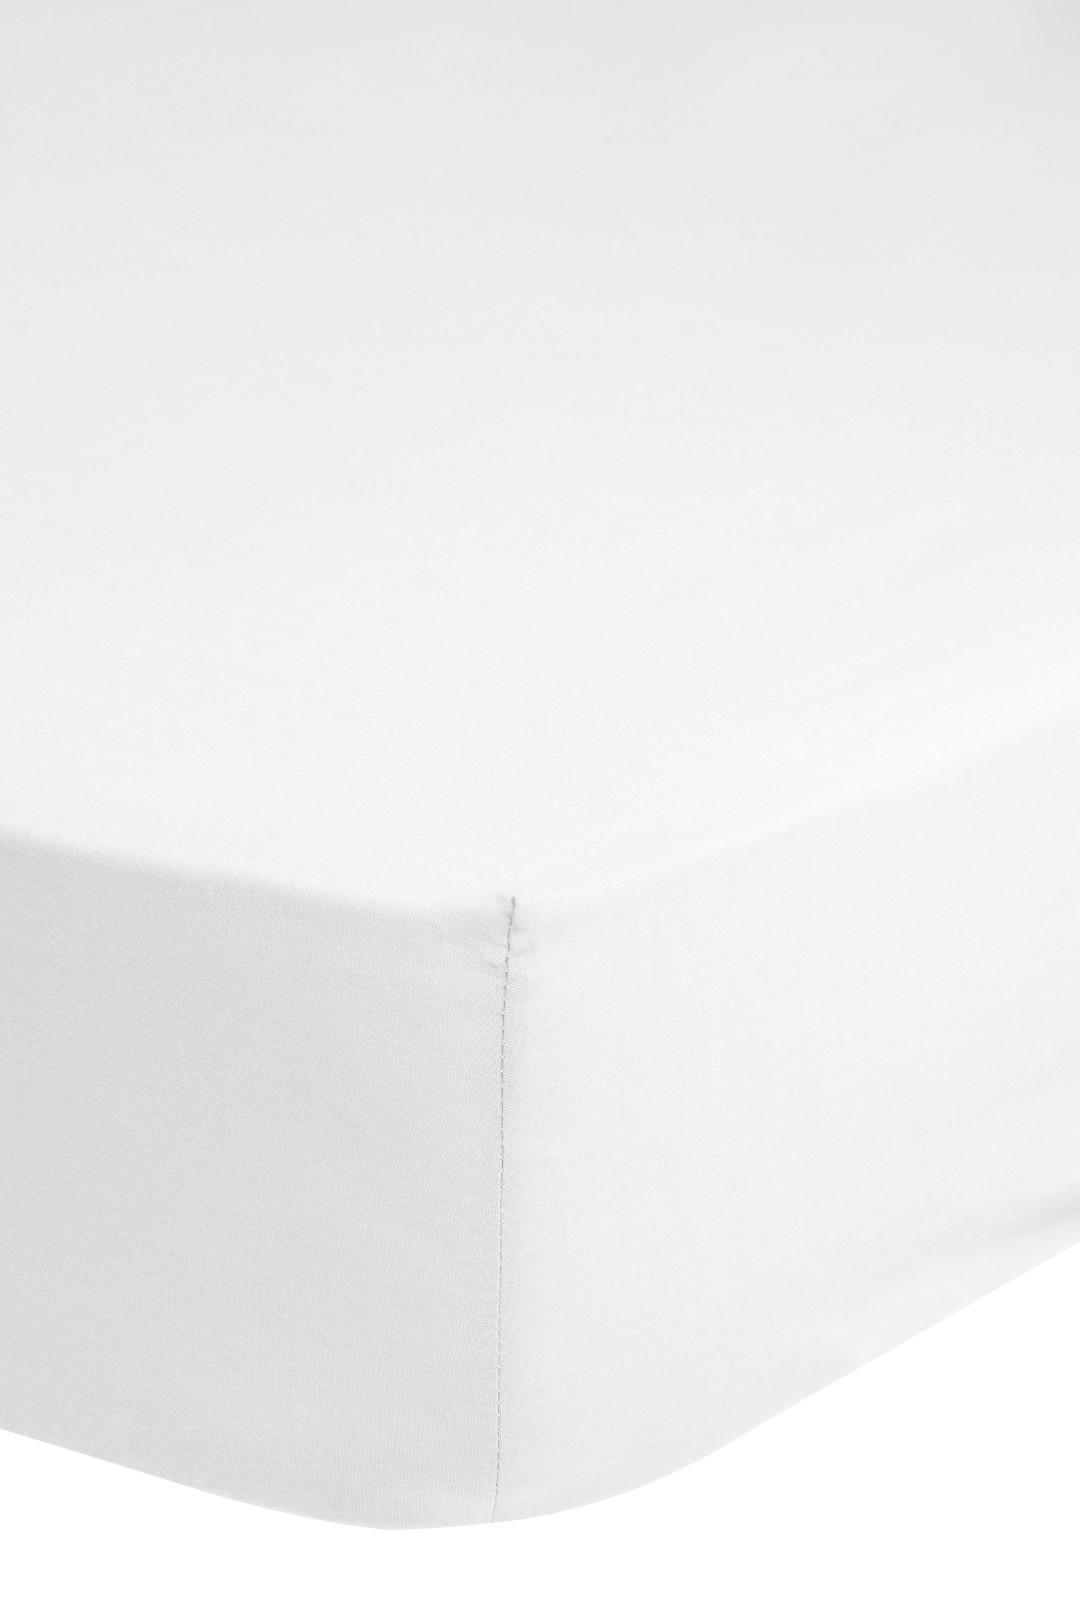 Elastické Prostěradlo Jersey Z Bavlny 140x200cm - bílá, Basics, textil (140/200cm) - MID.YOU